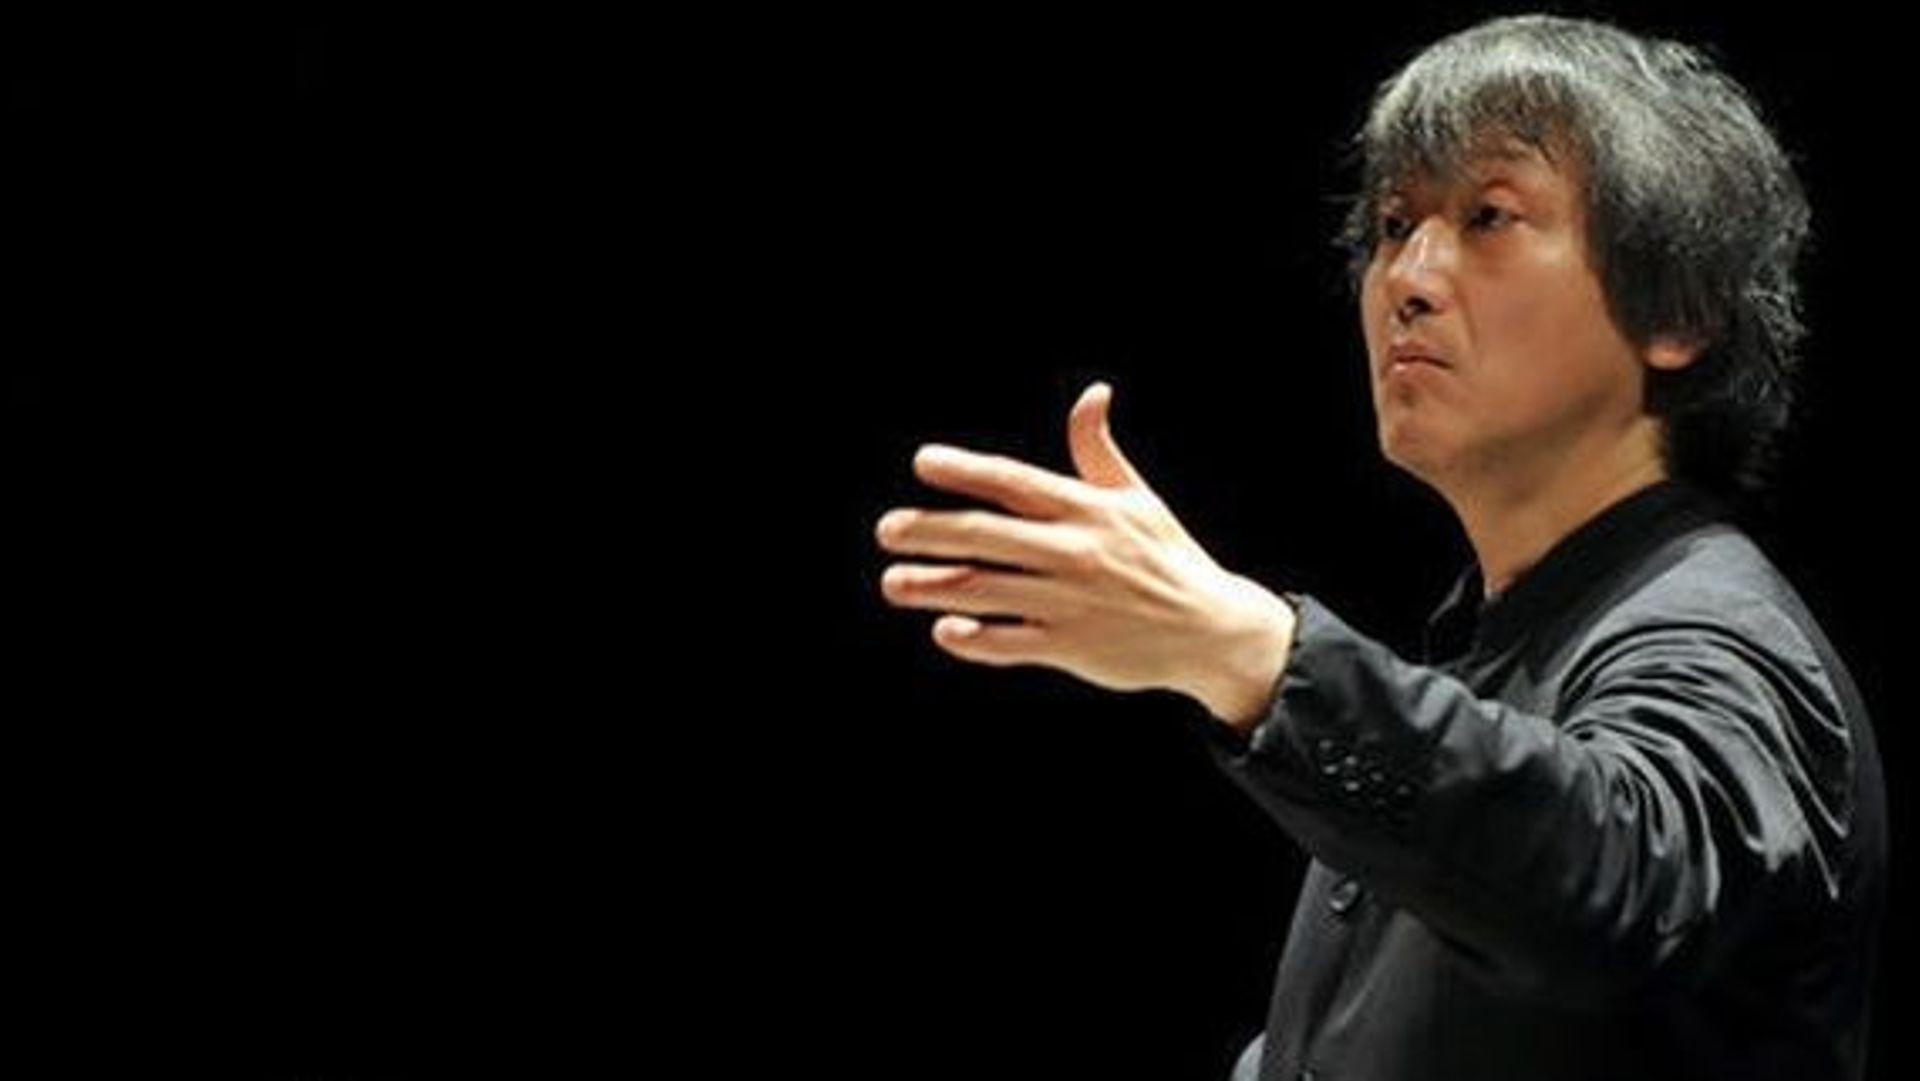 Le chef d’orchestre Kazushi Ono sera le nouveau directeur musical du Brussels Philharmonic